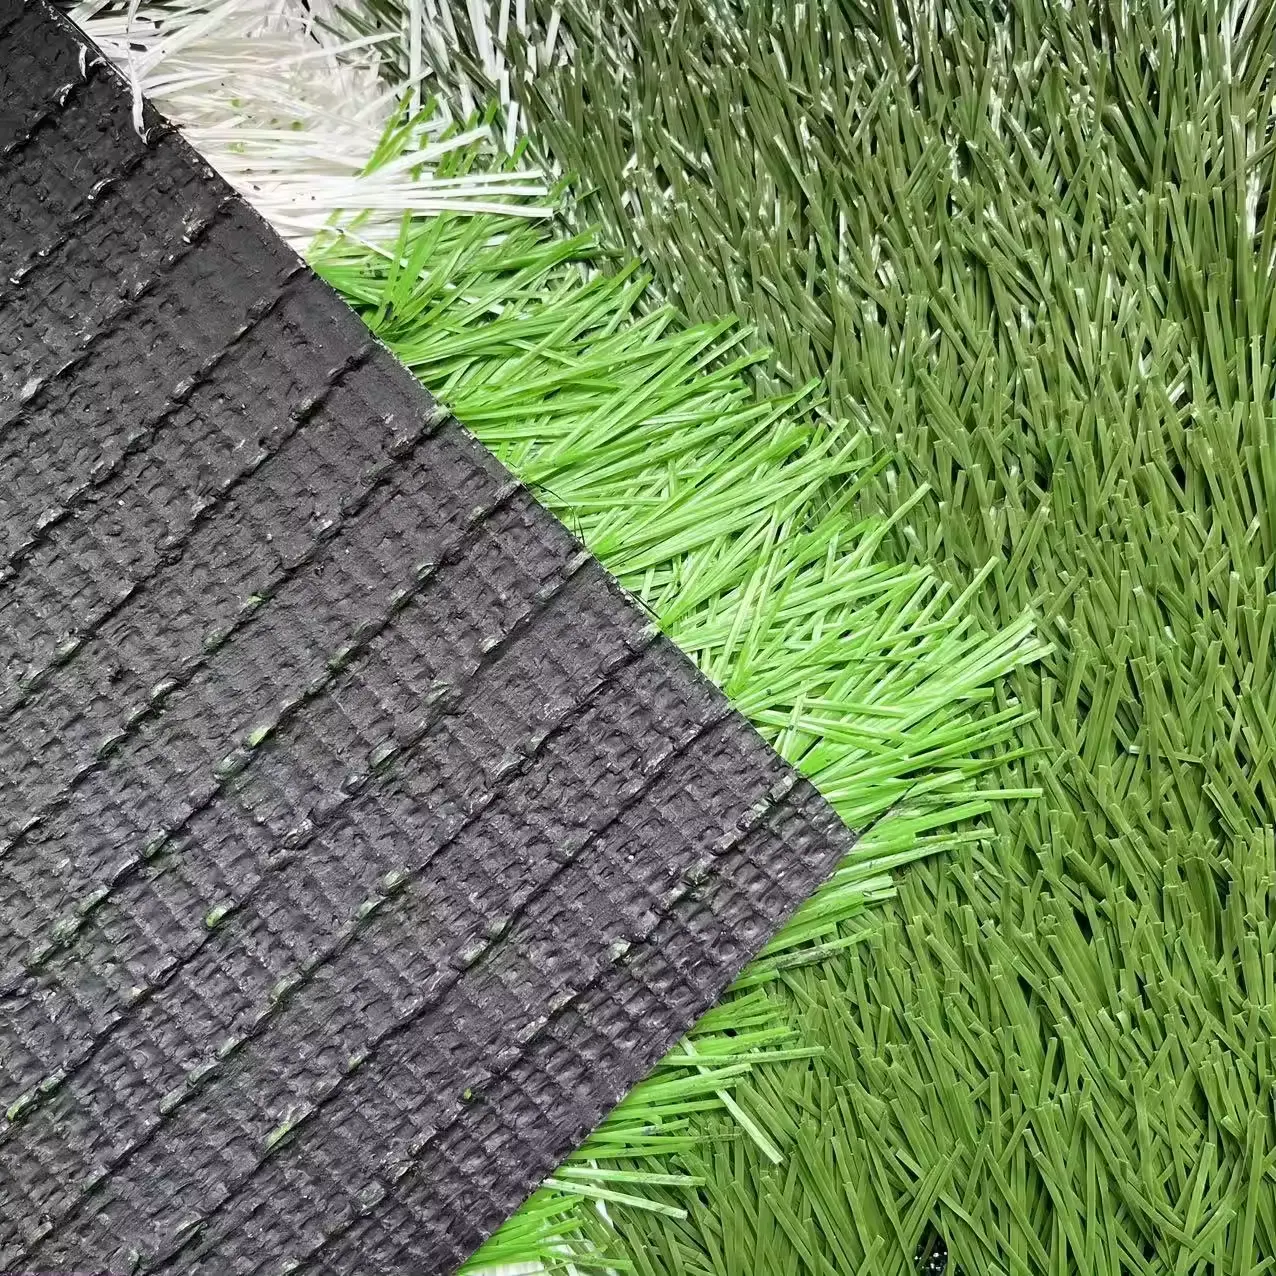 Alfombra de césped sintético verde de césped Artificial de alta densidad panorámica para campo de fútbol suelo deportivo Cancha de Pádel de fútbol